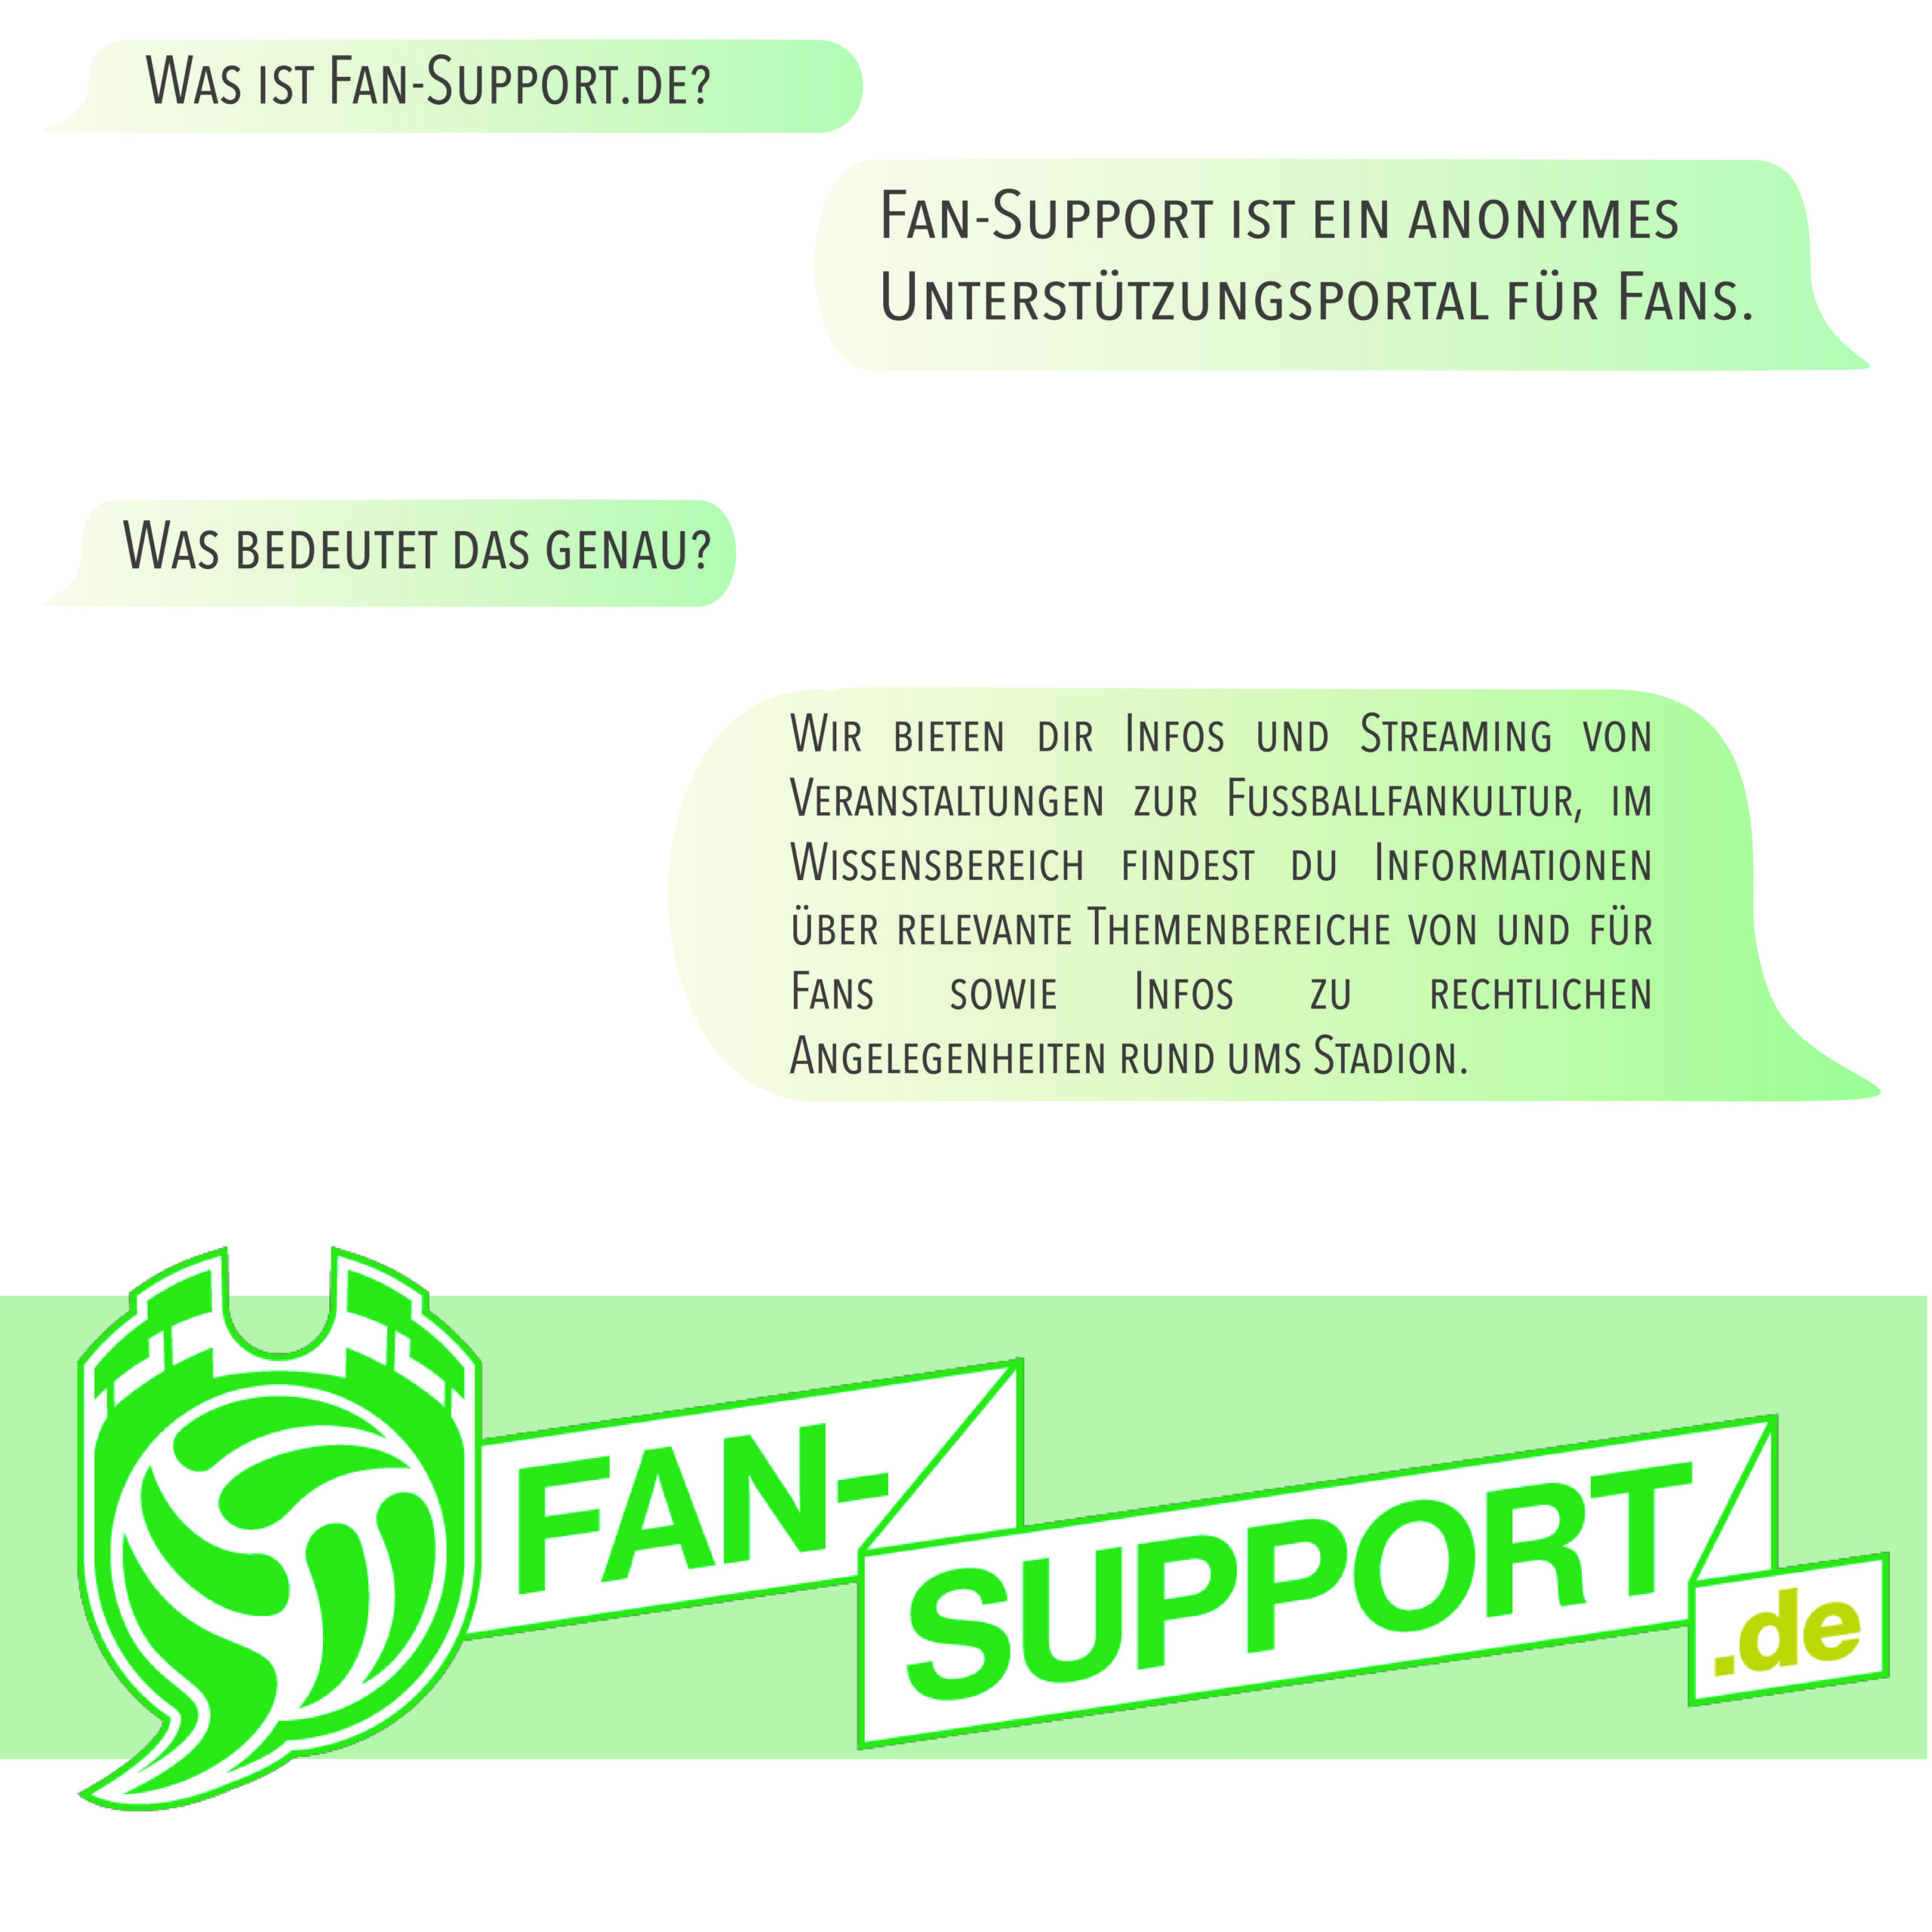 Grafik Fanprojekt - Fansupport